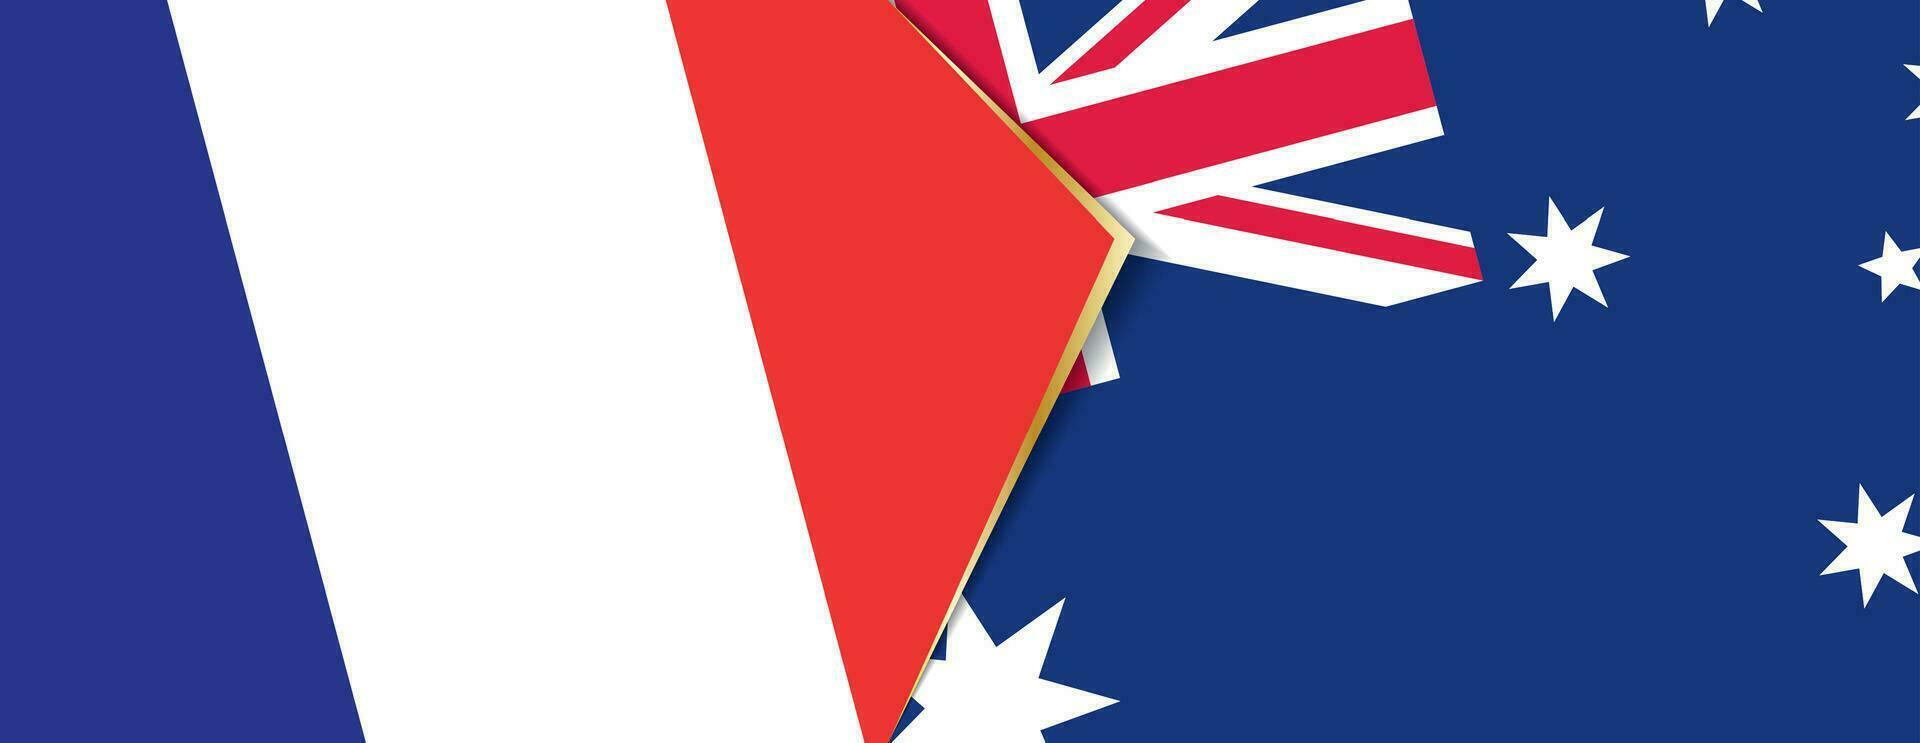 Francia y Australia banderas, dos vector banderas